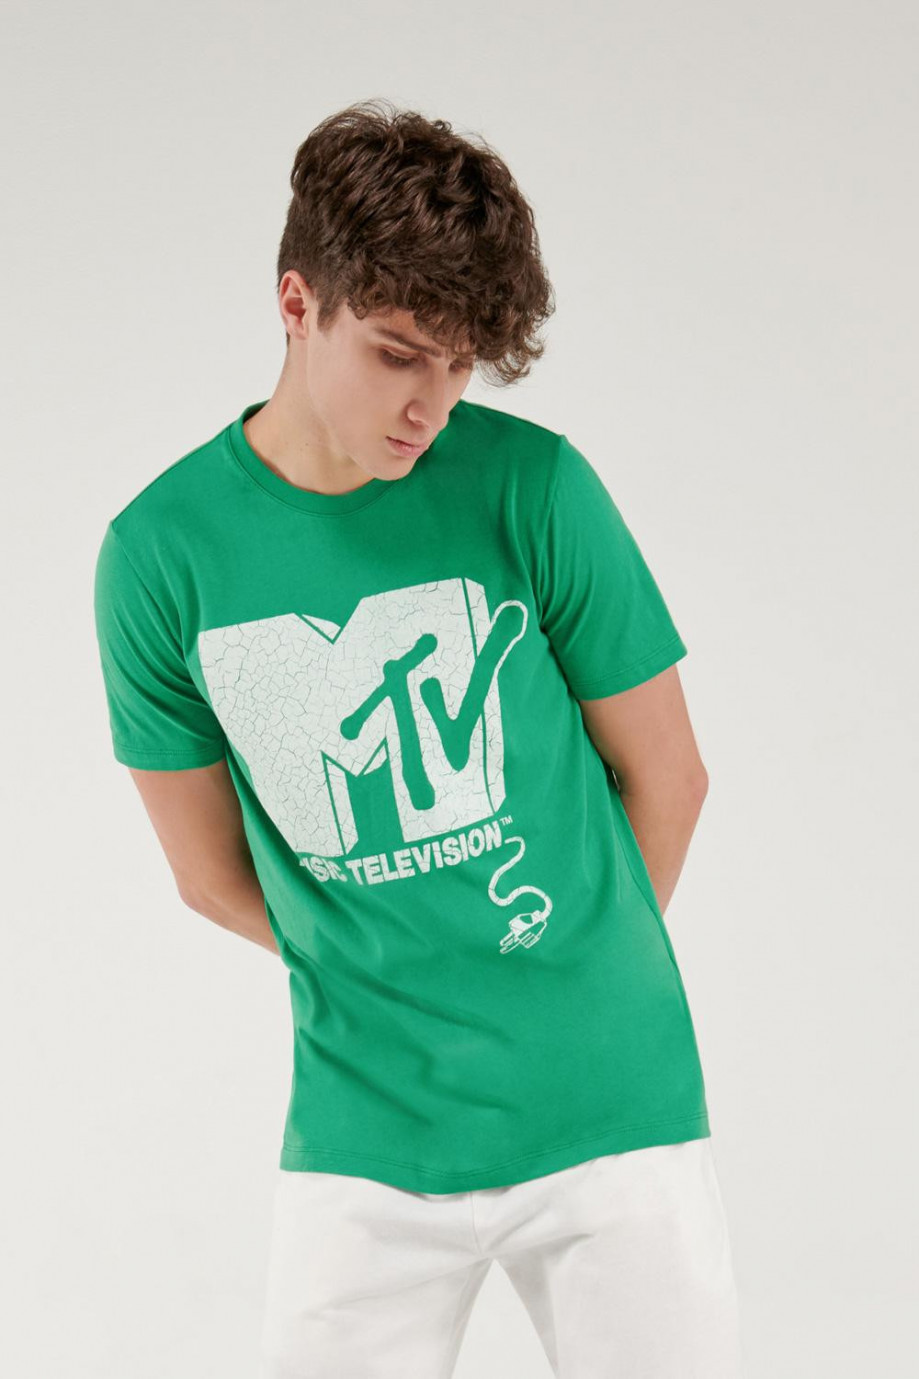 Camiseta manga corta estampada de MTV